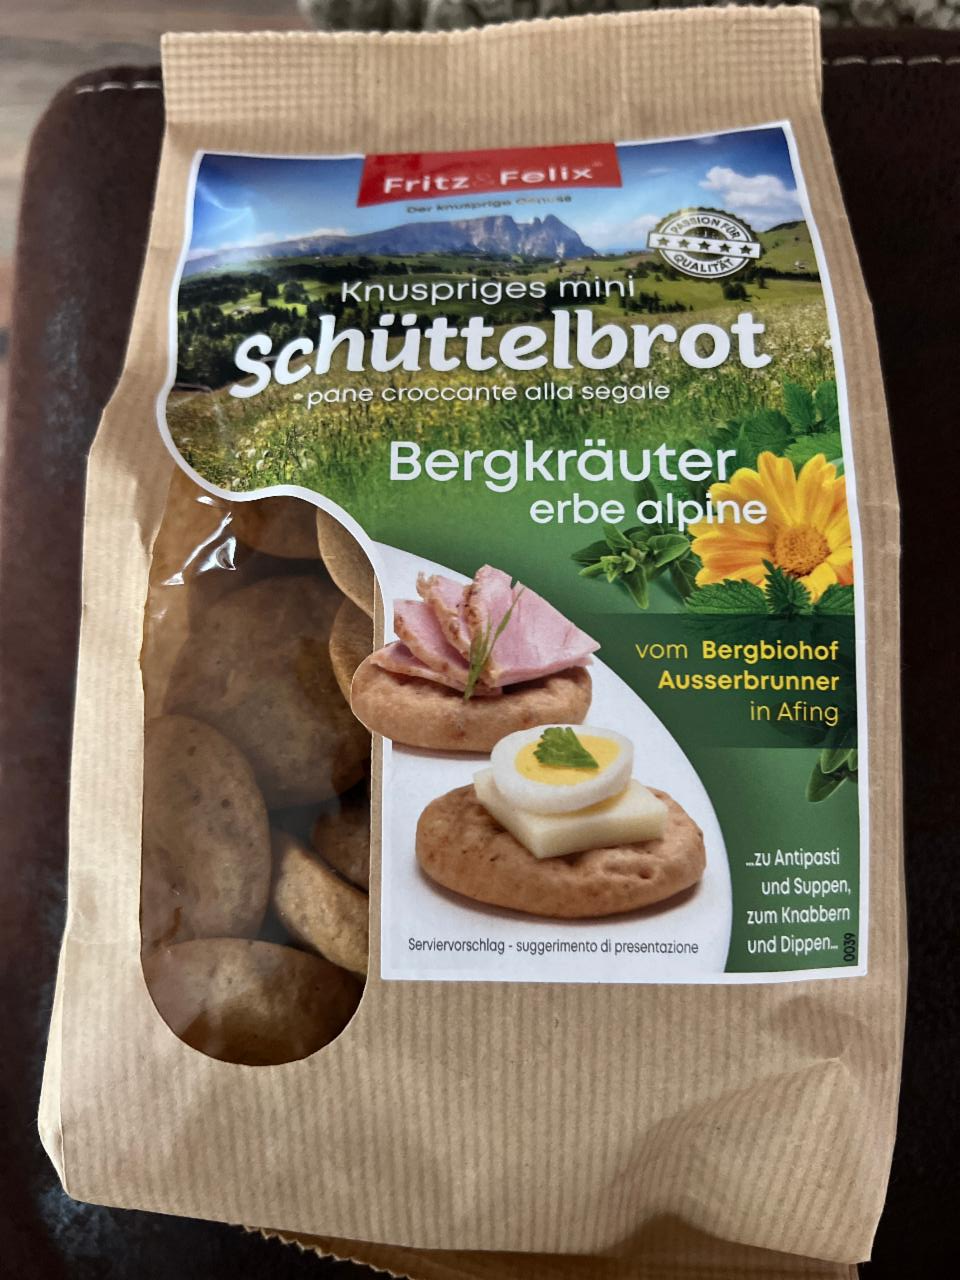 Фото - мини хлеб Schüttelbrot Fritz Felix